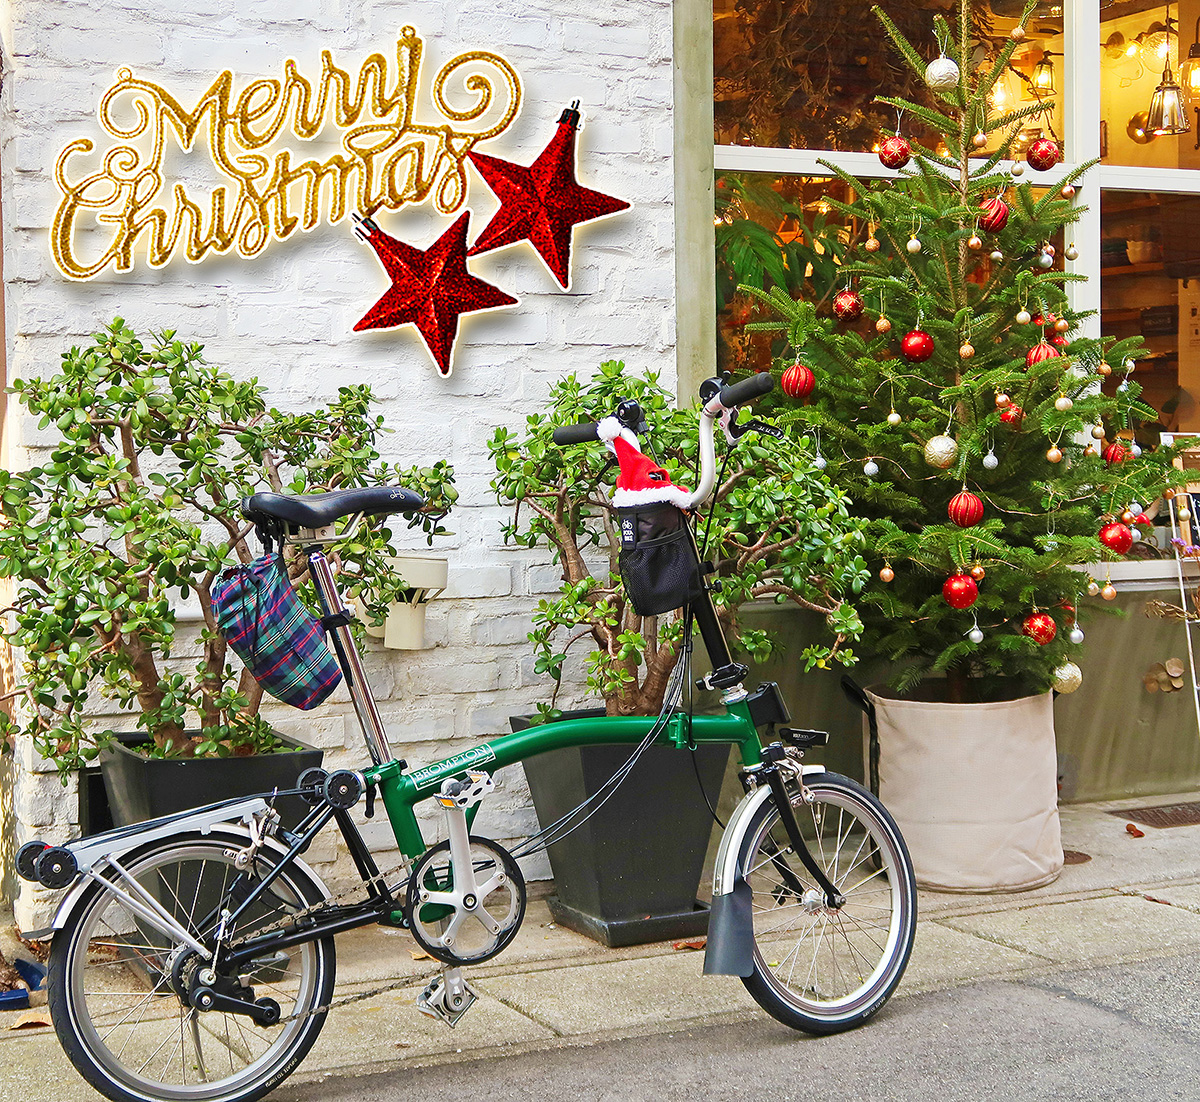 折りたたみ自転車ブロンプトンにクリスマスのサンタ帽を装着した様子